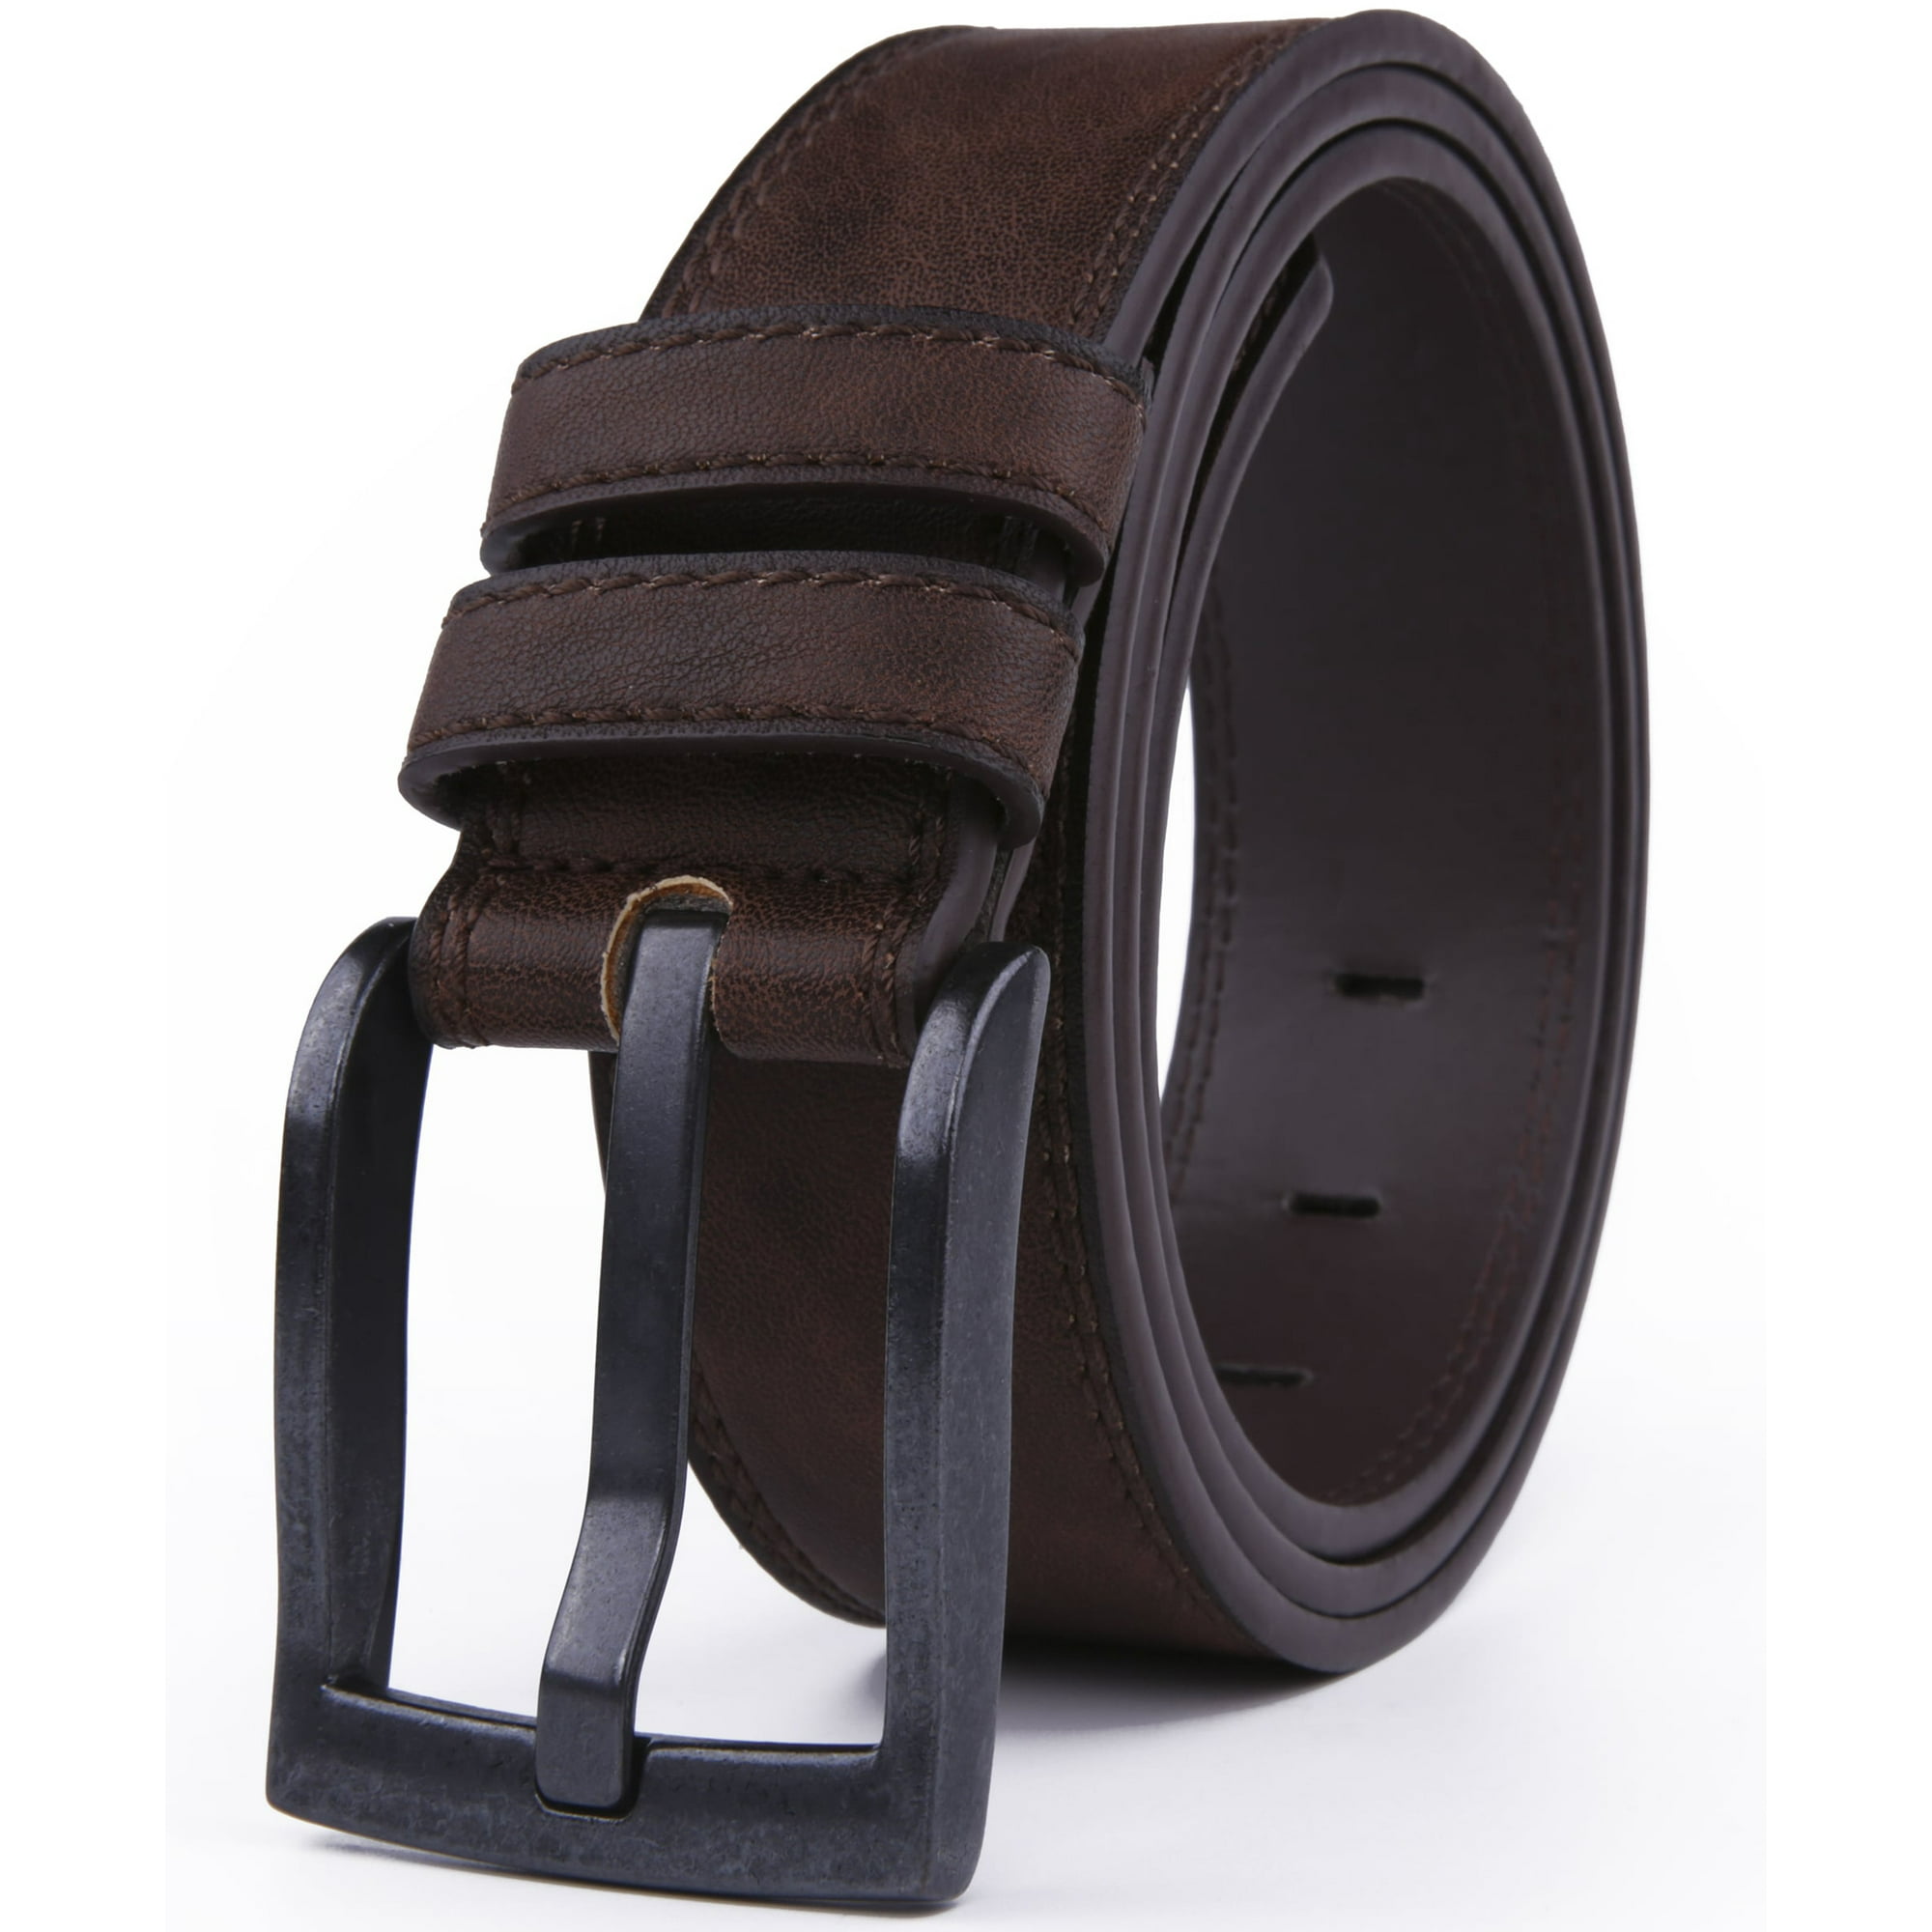 Genuine Leather Dress Belts For Men - Mens Belt For Suits, Jeans